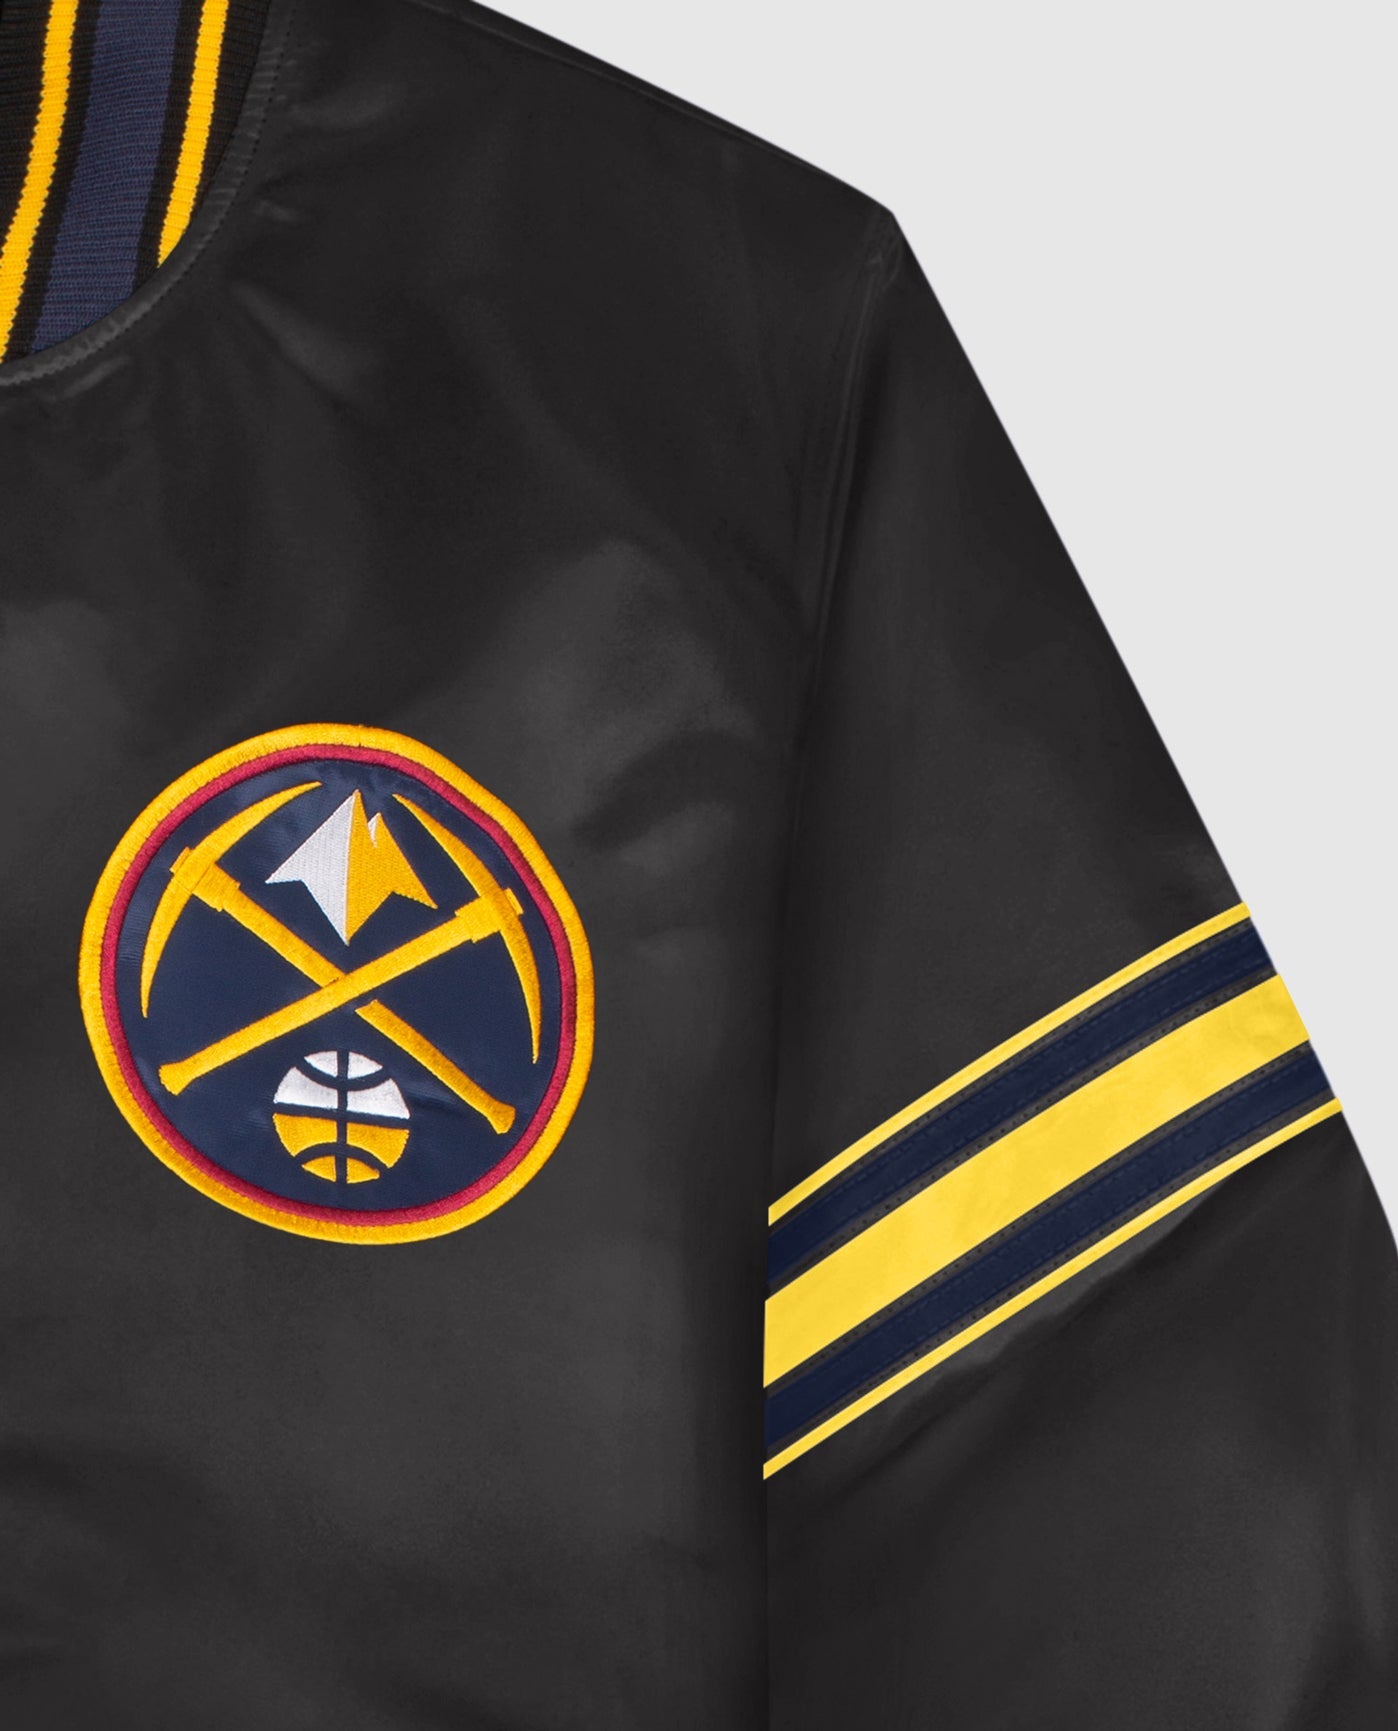 Front Team Logo Emblem and Sleeve Stripe on Denver Nuggets Satin Full-Snap Jacket | Black